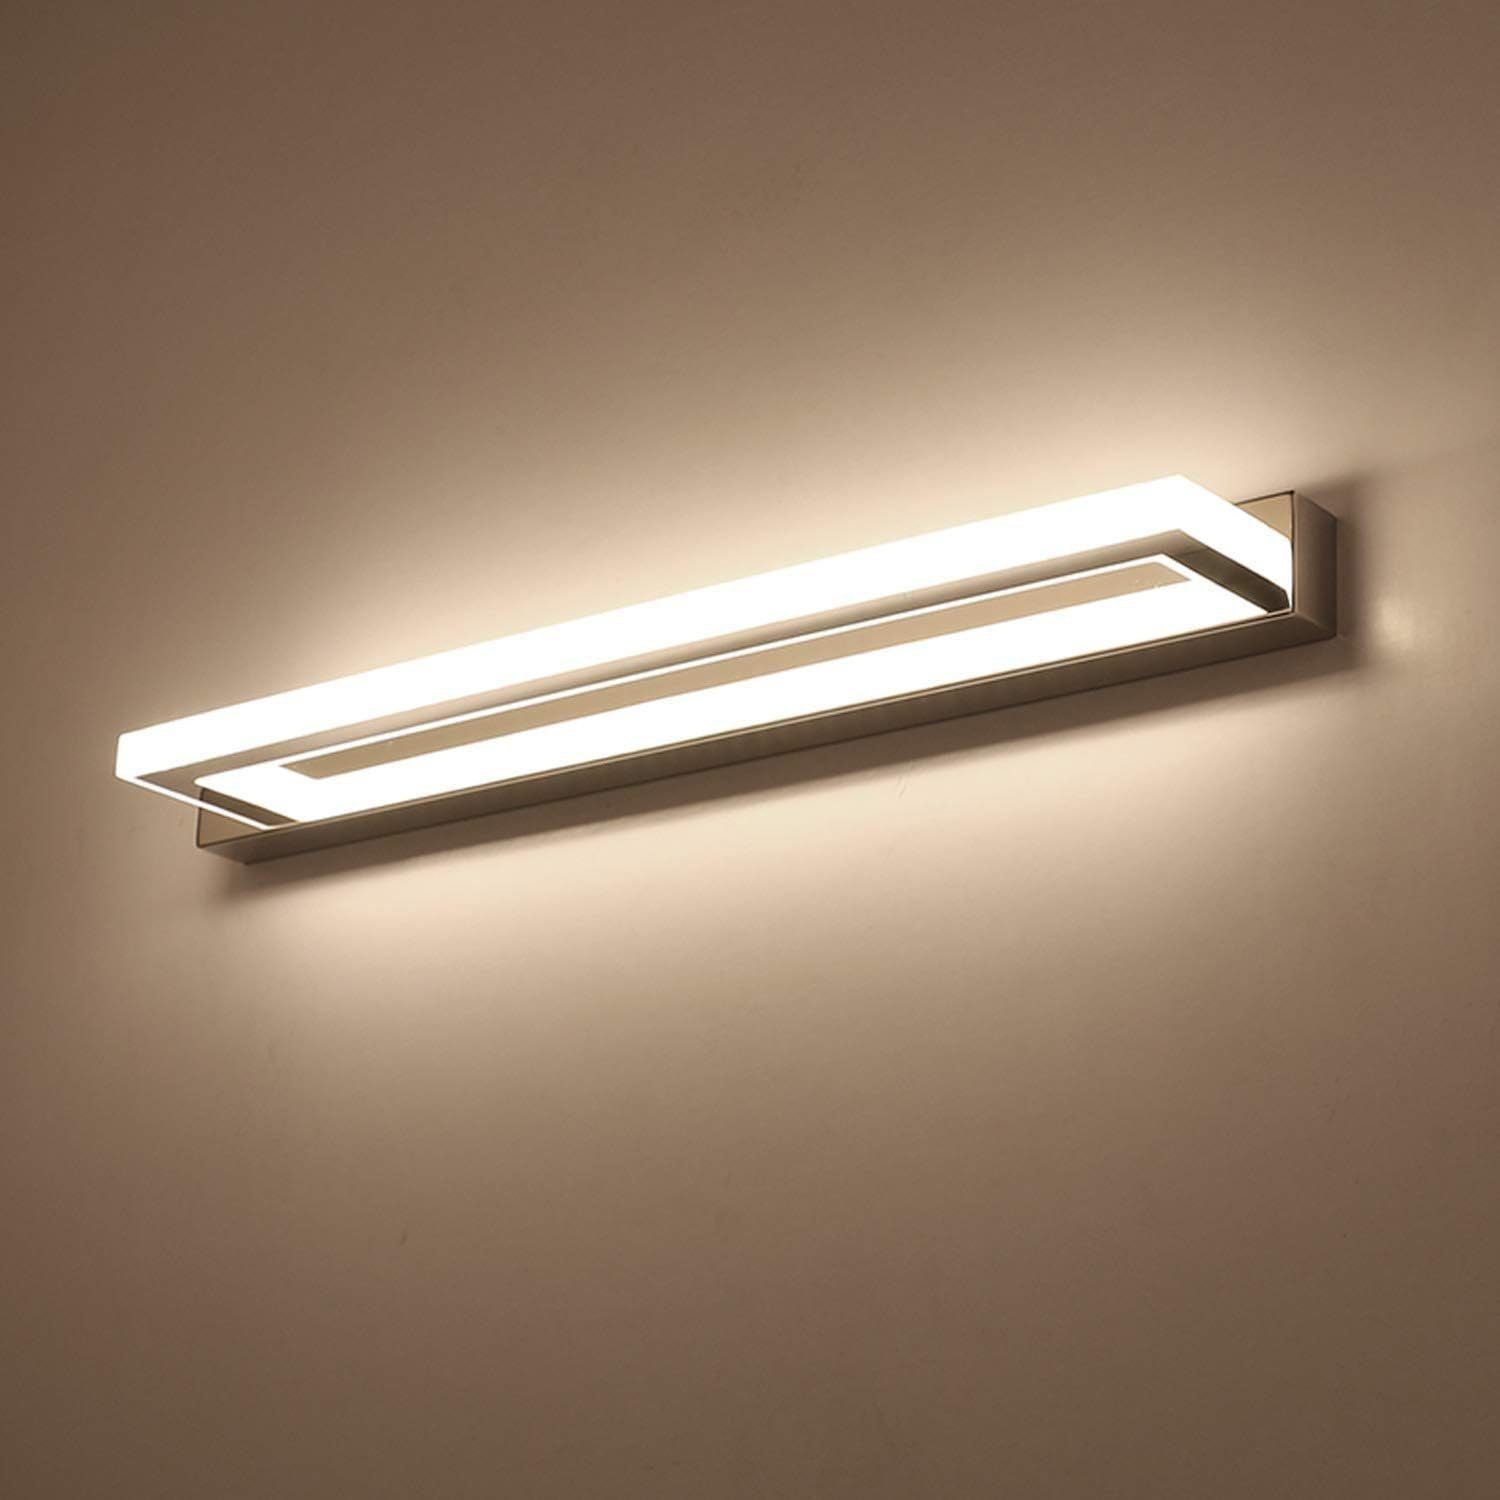 DOPWii Spiegelleuchte LED Spiegelleuchte, 9W Wandmontage Lampe, 42 x 4,5 x 8 cm